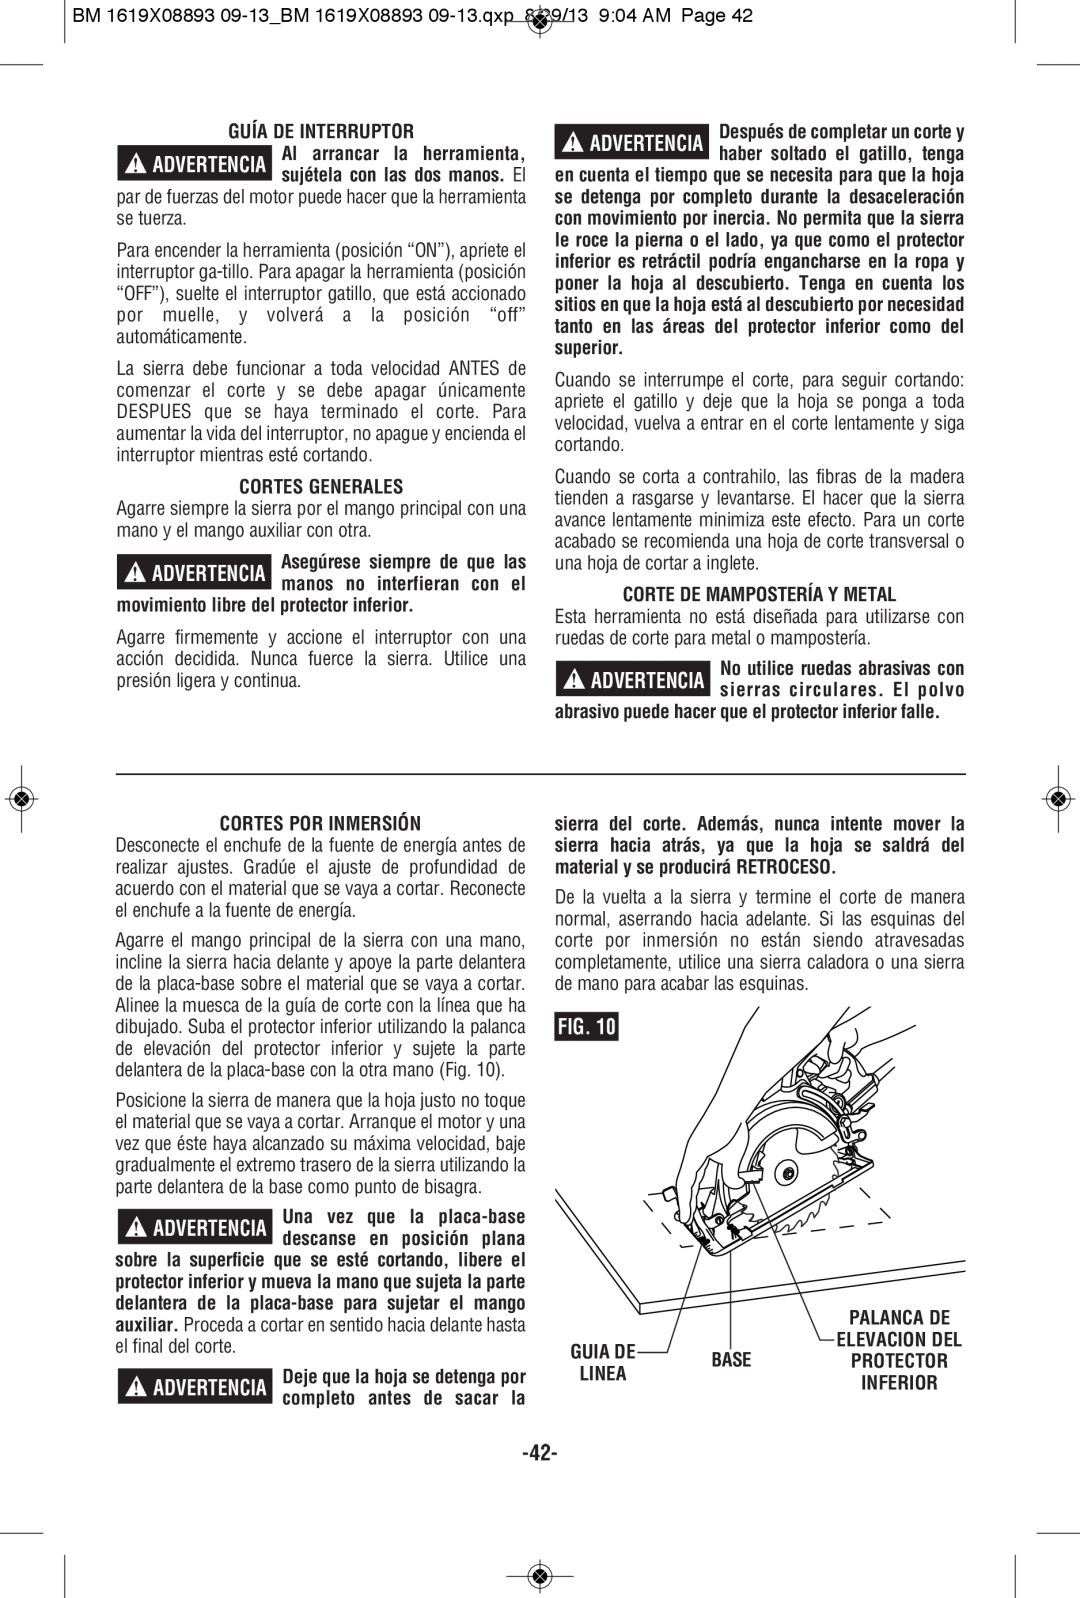 Bosch Power Tools CSW41 manual Guía De Interruptor, Cortes Generales, movimiento libre del protector inferior, Base 